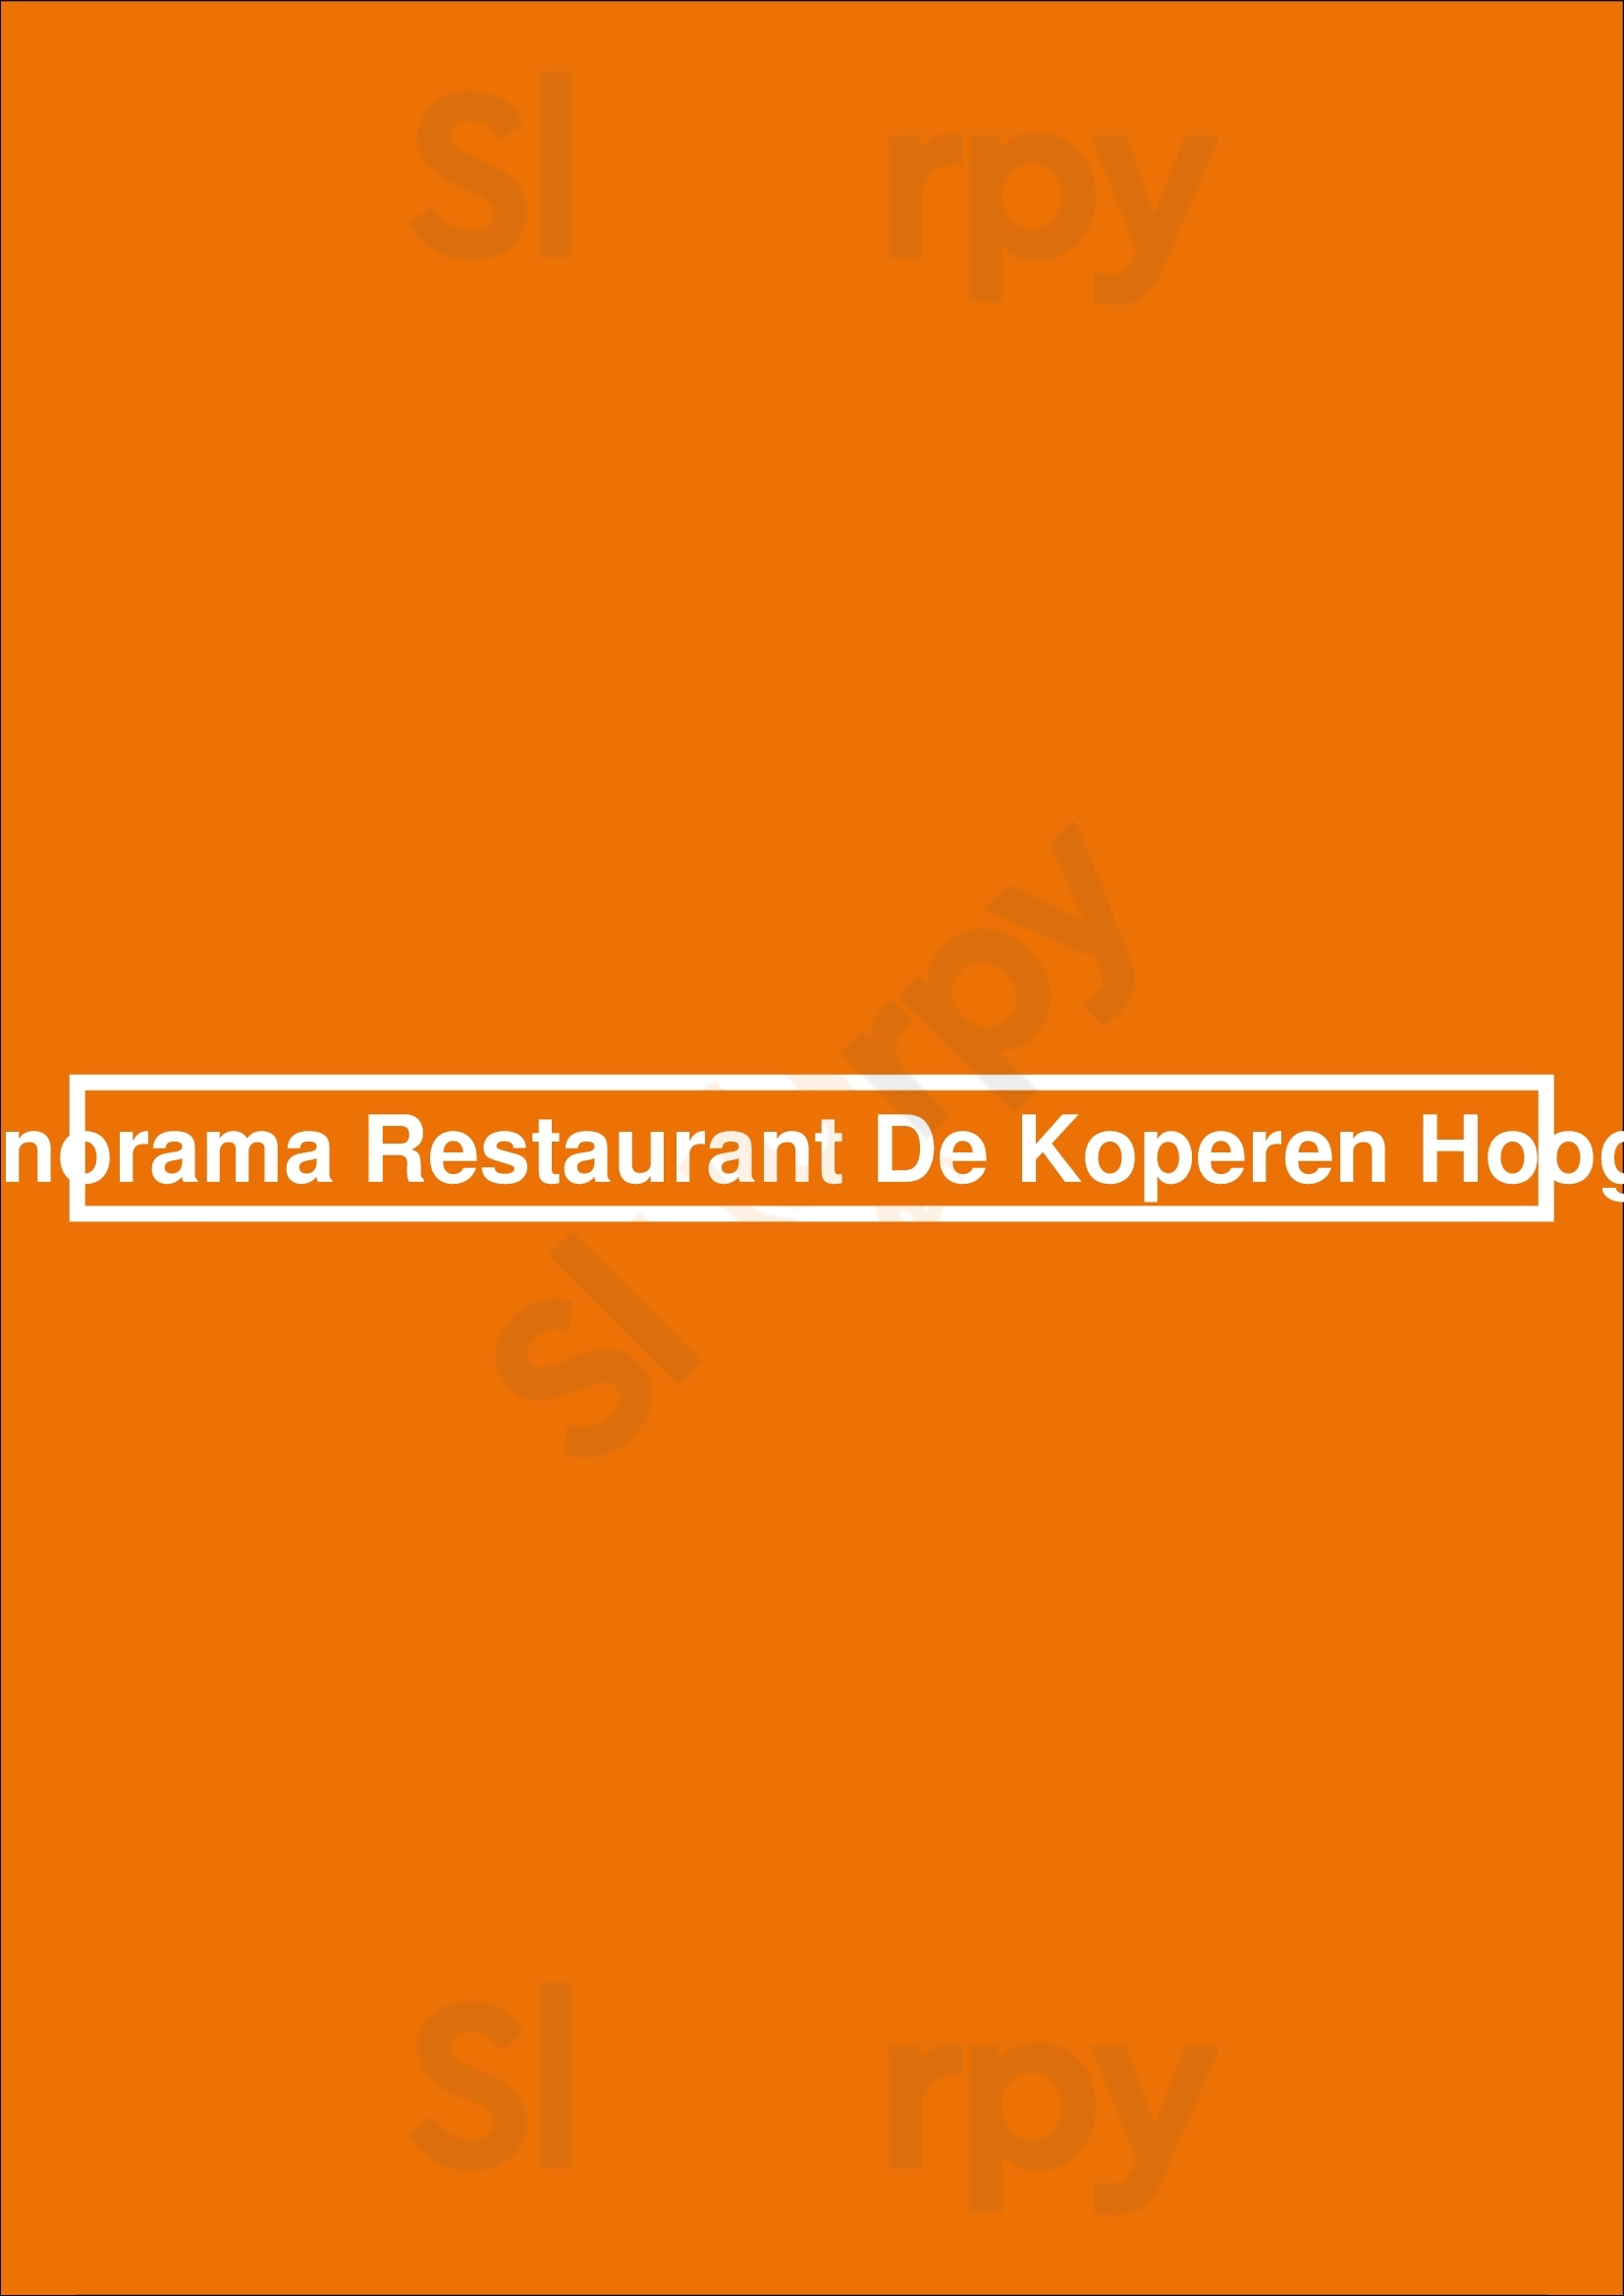 Panorama Restaurant De Koperen Hoogte Zwolle Menu - 1